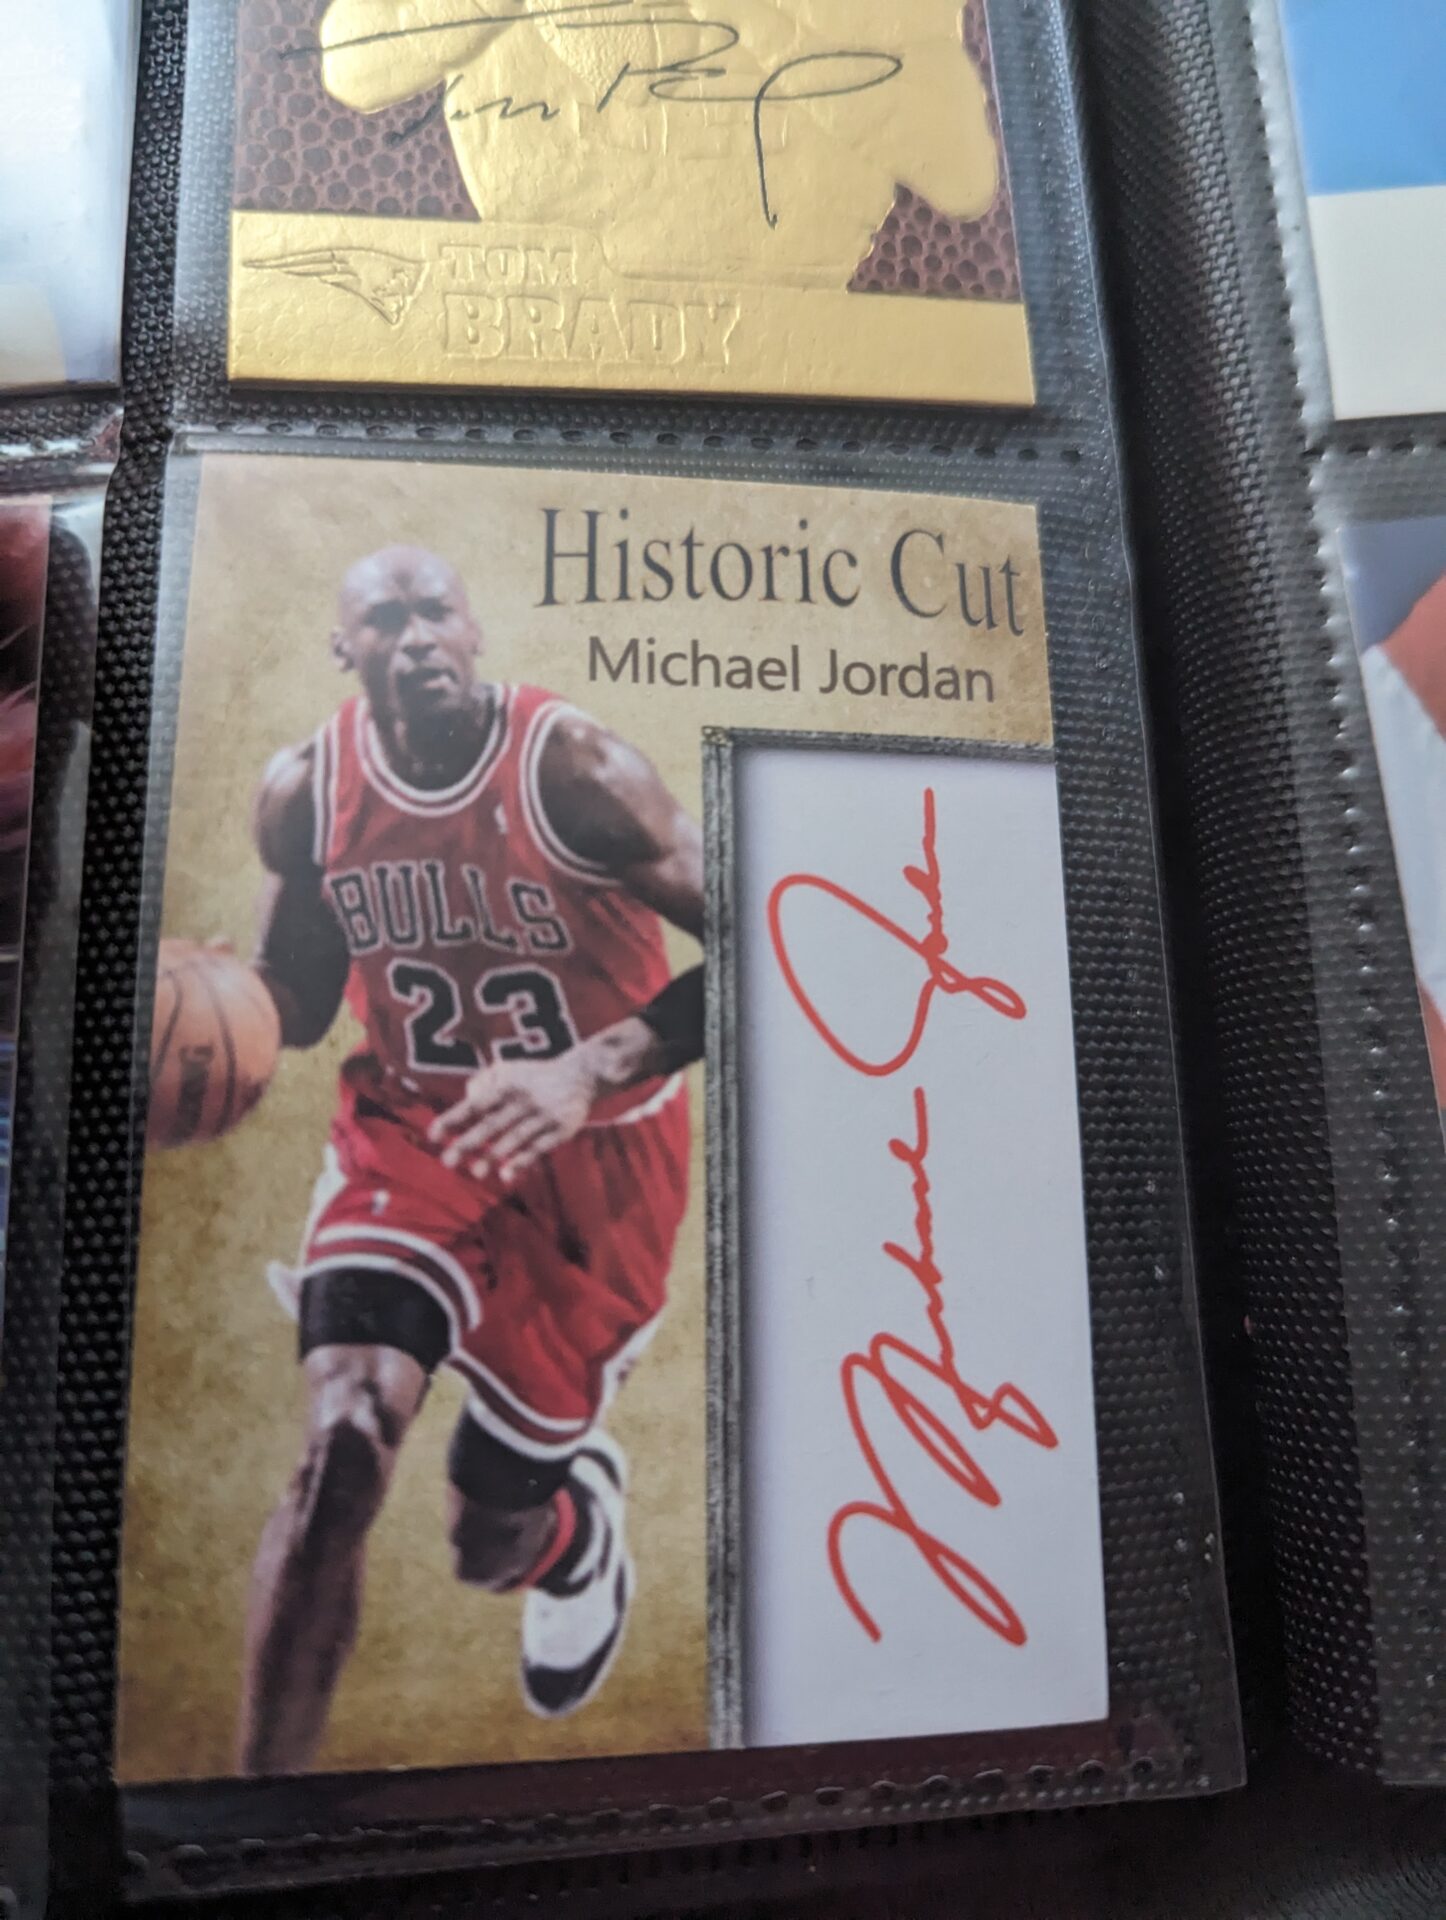 Michael Jordan auto reprint card